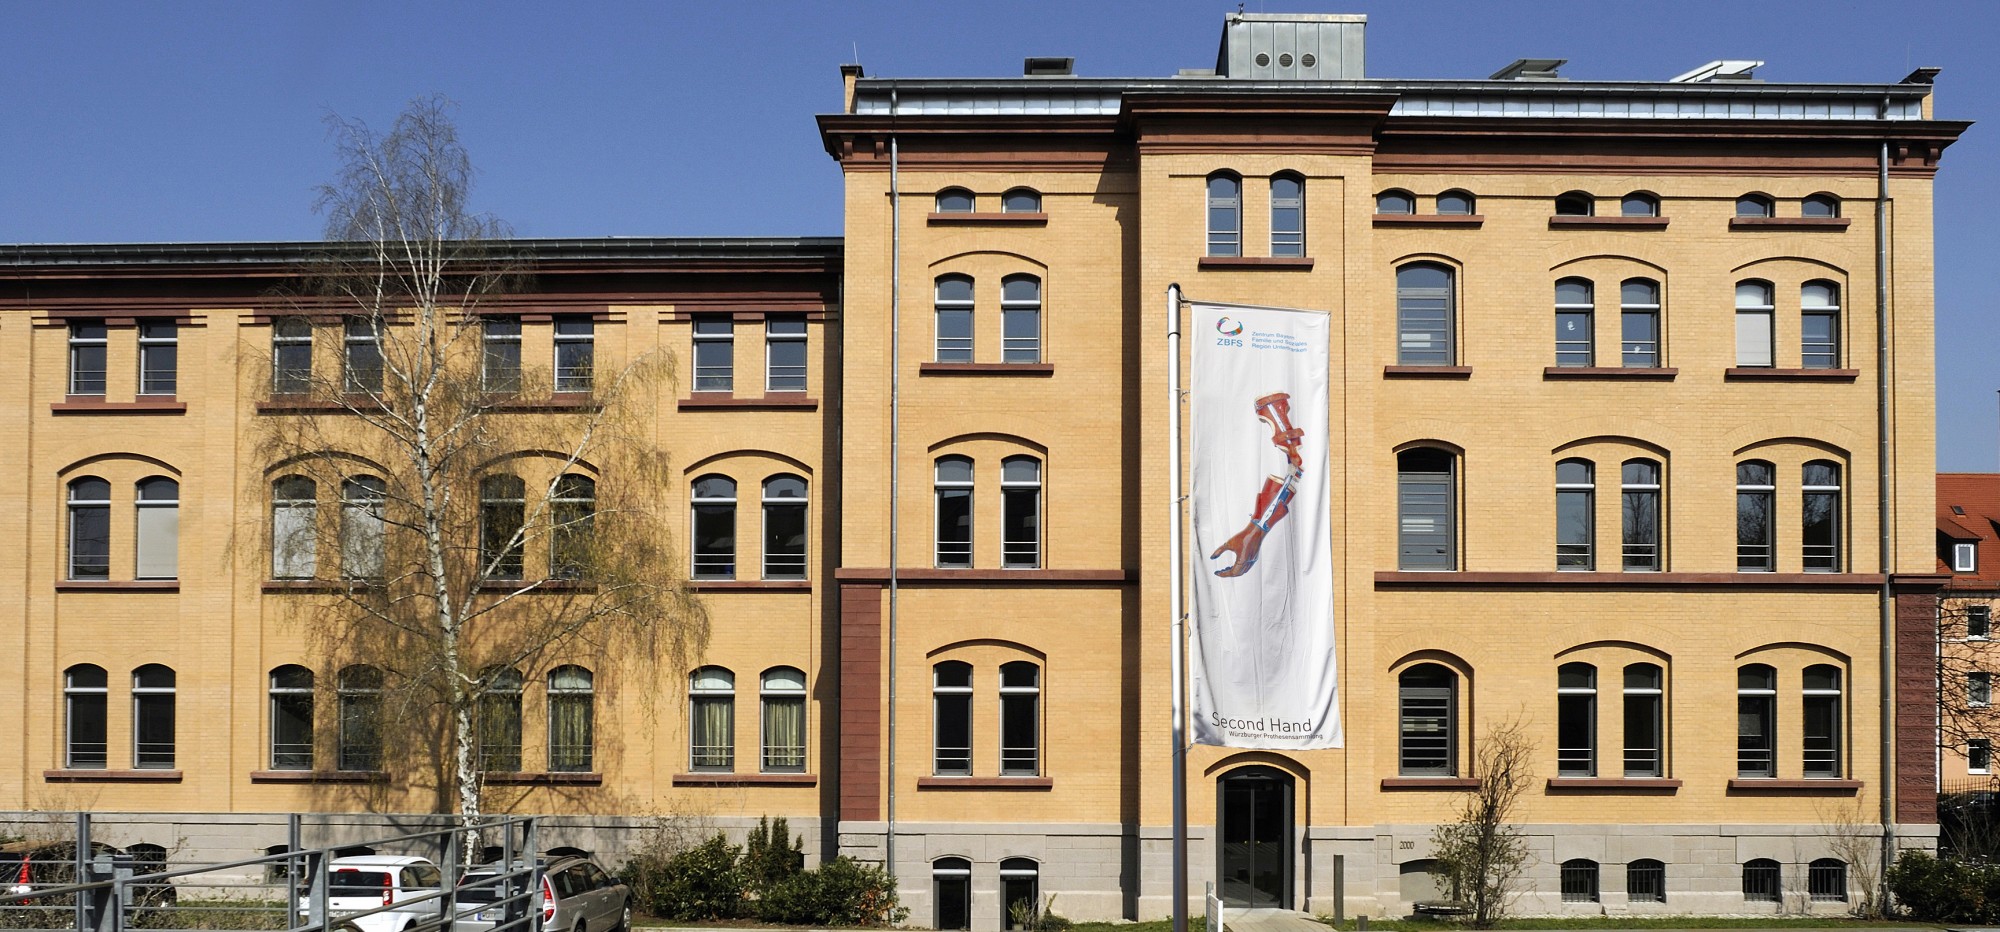 Blick auf die Fassade eines ZBFS-Gebäudes mit Eingang zur Würzburger Prothesensammlung der durch eine Fahne mit Second Hand Logo gekennzeichnet ist 